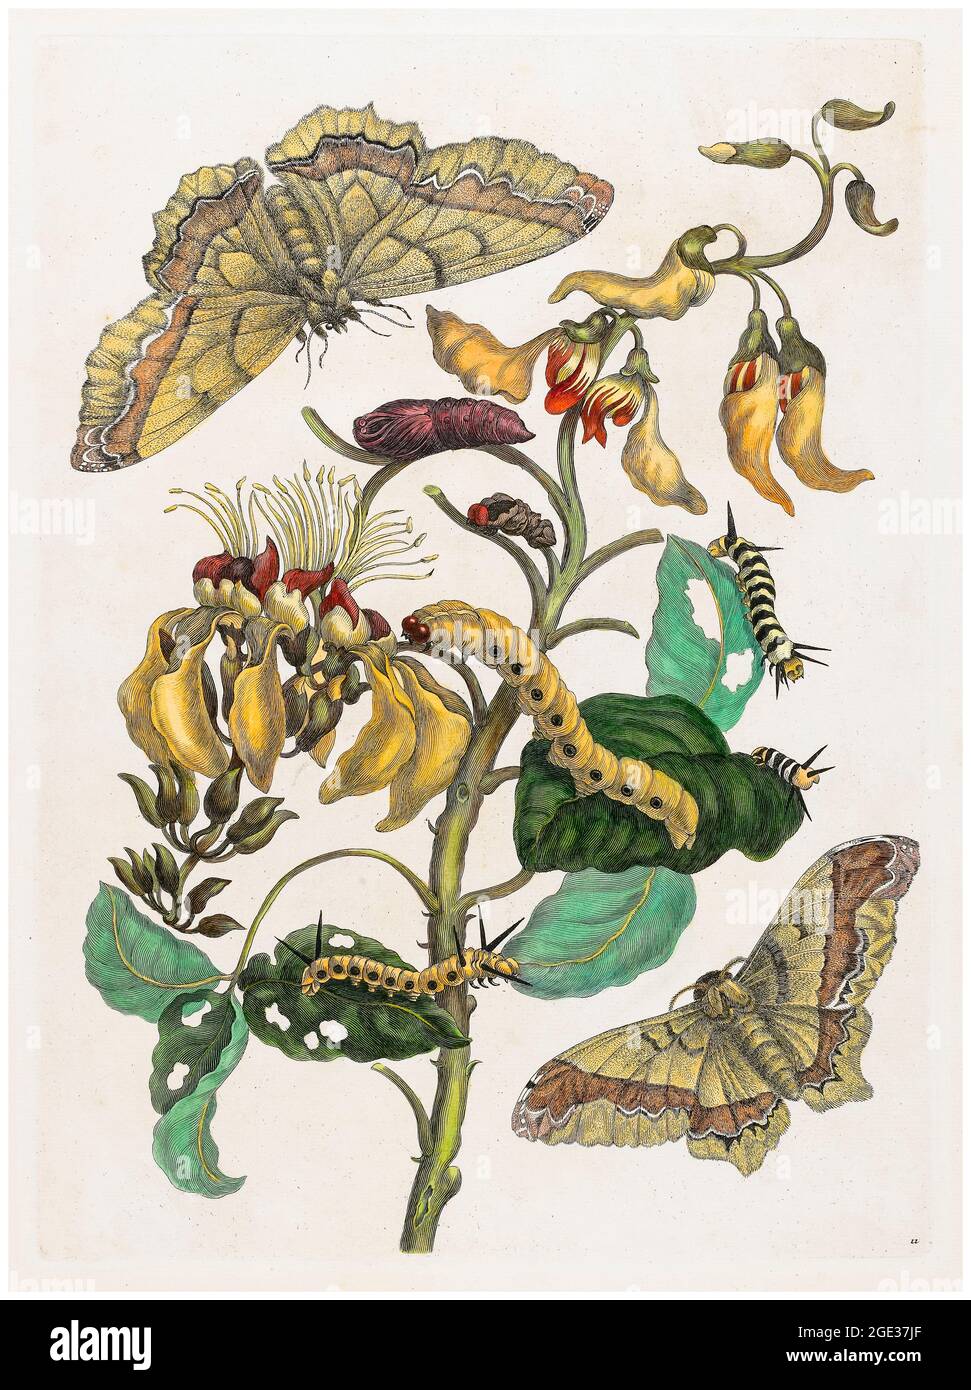 Maria Sibylla Merian, Caterpillars, Butterflies and Flower, illustration, 1705 Stock Photo